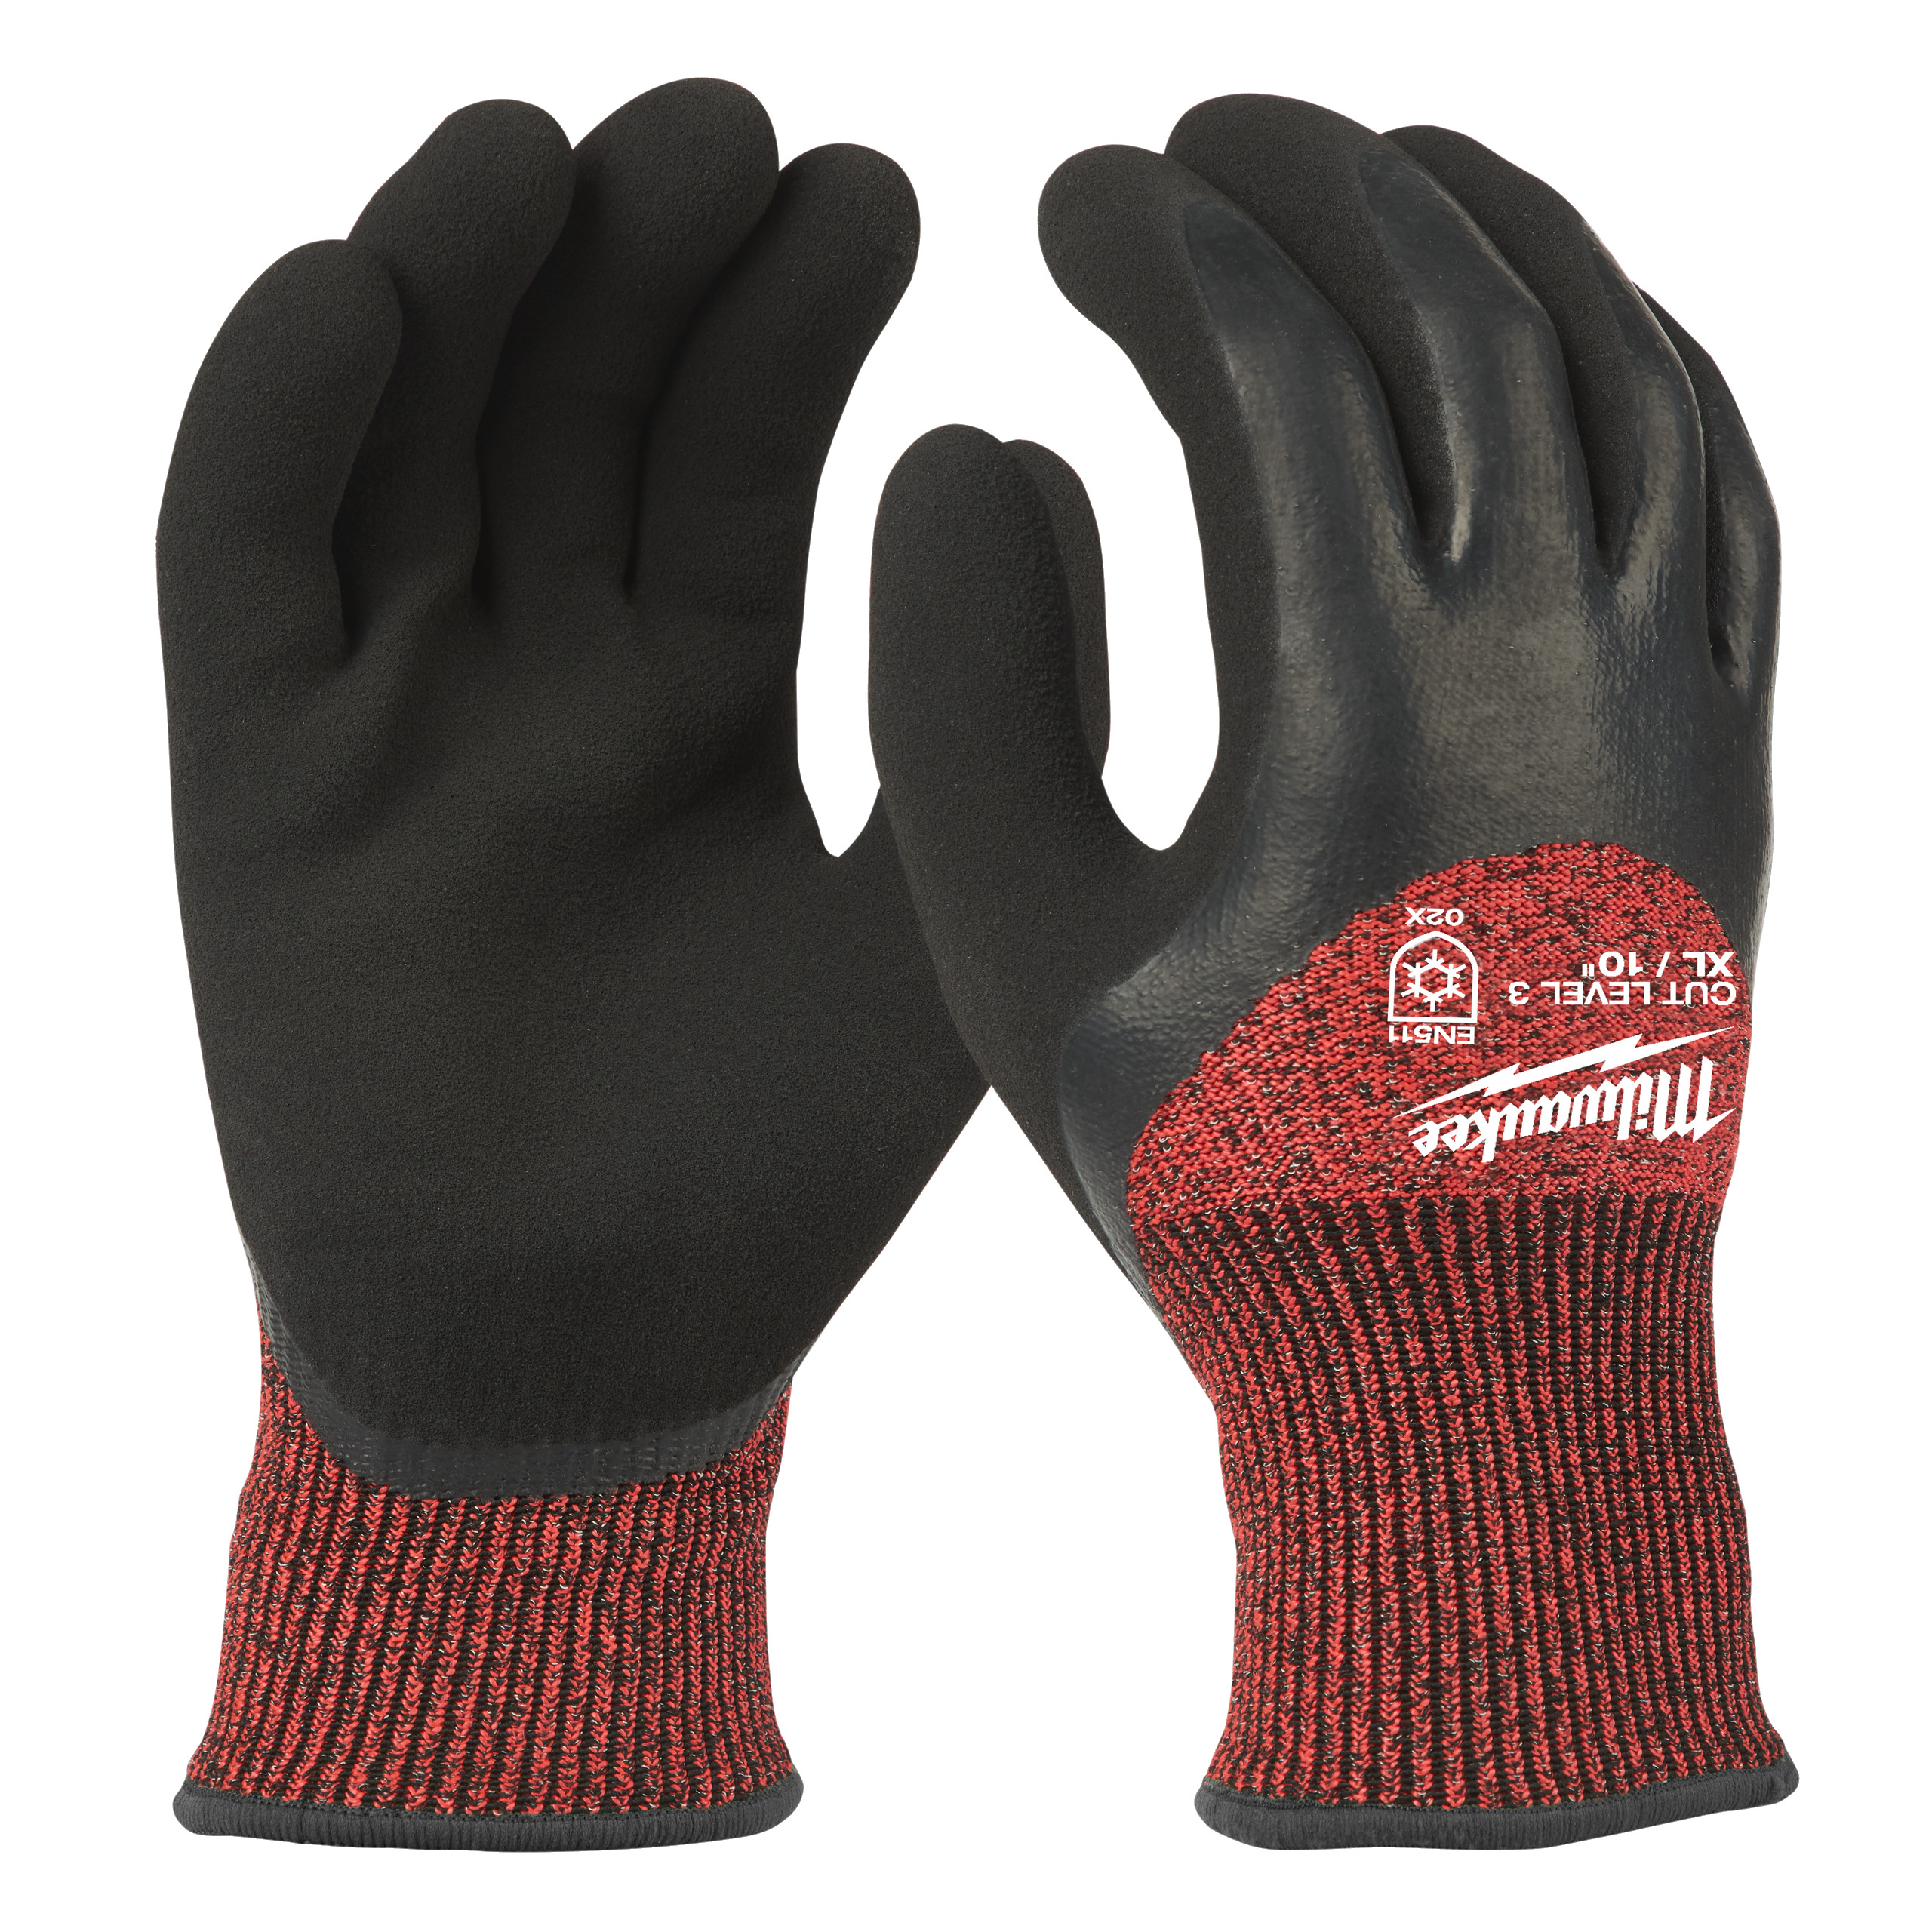 MILWAUKEE 4932471349 Zimní rukavice odolné proti proříznutí Stupeň 3 -  vel XL/10 - 1ks